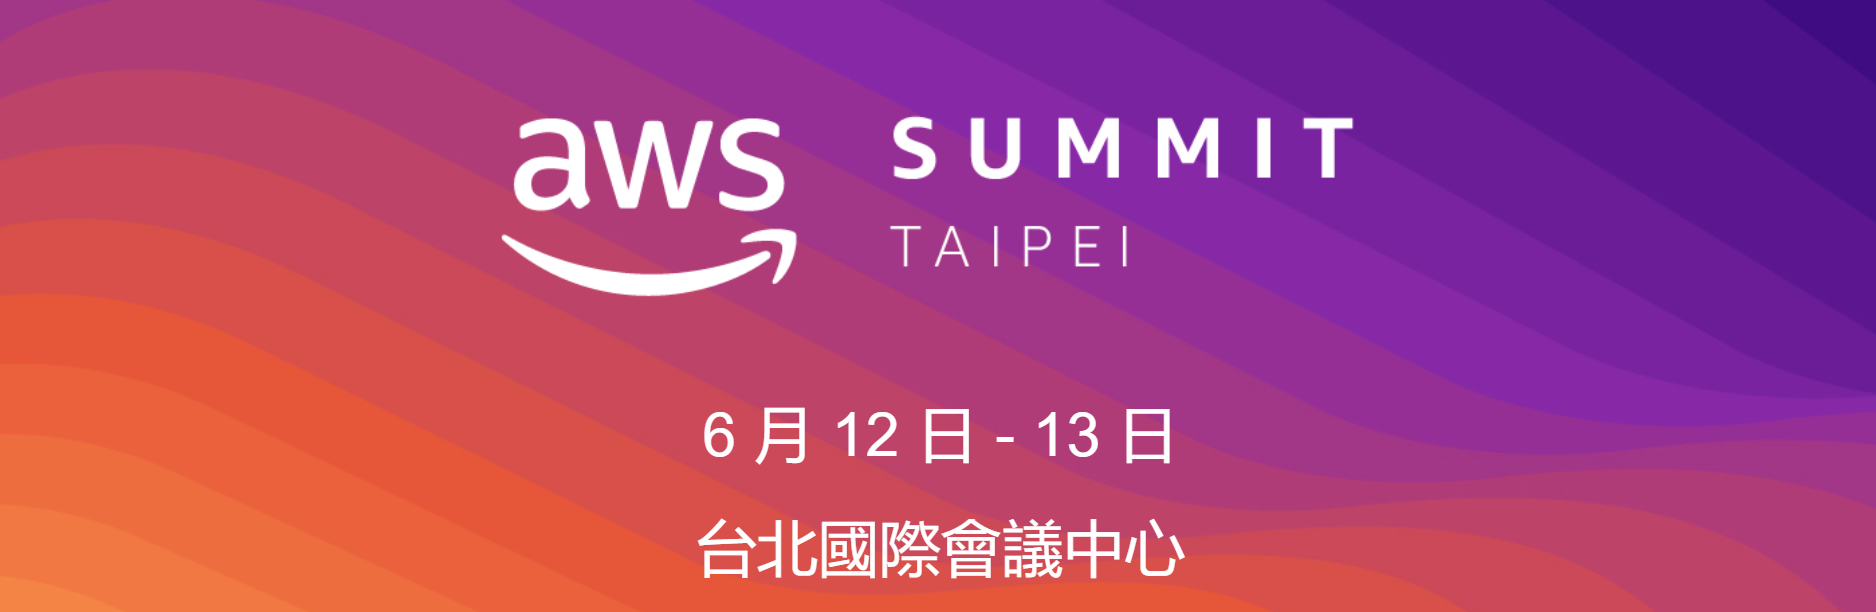 AWS summit taipei 6月12日-6月13日 台北國際會議中心